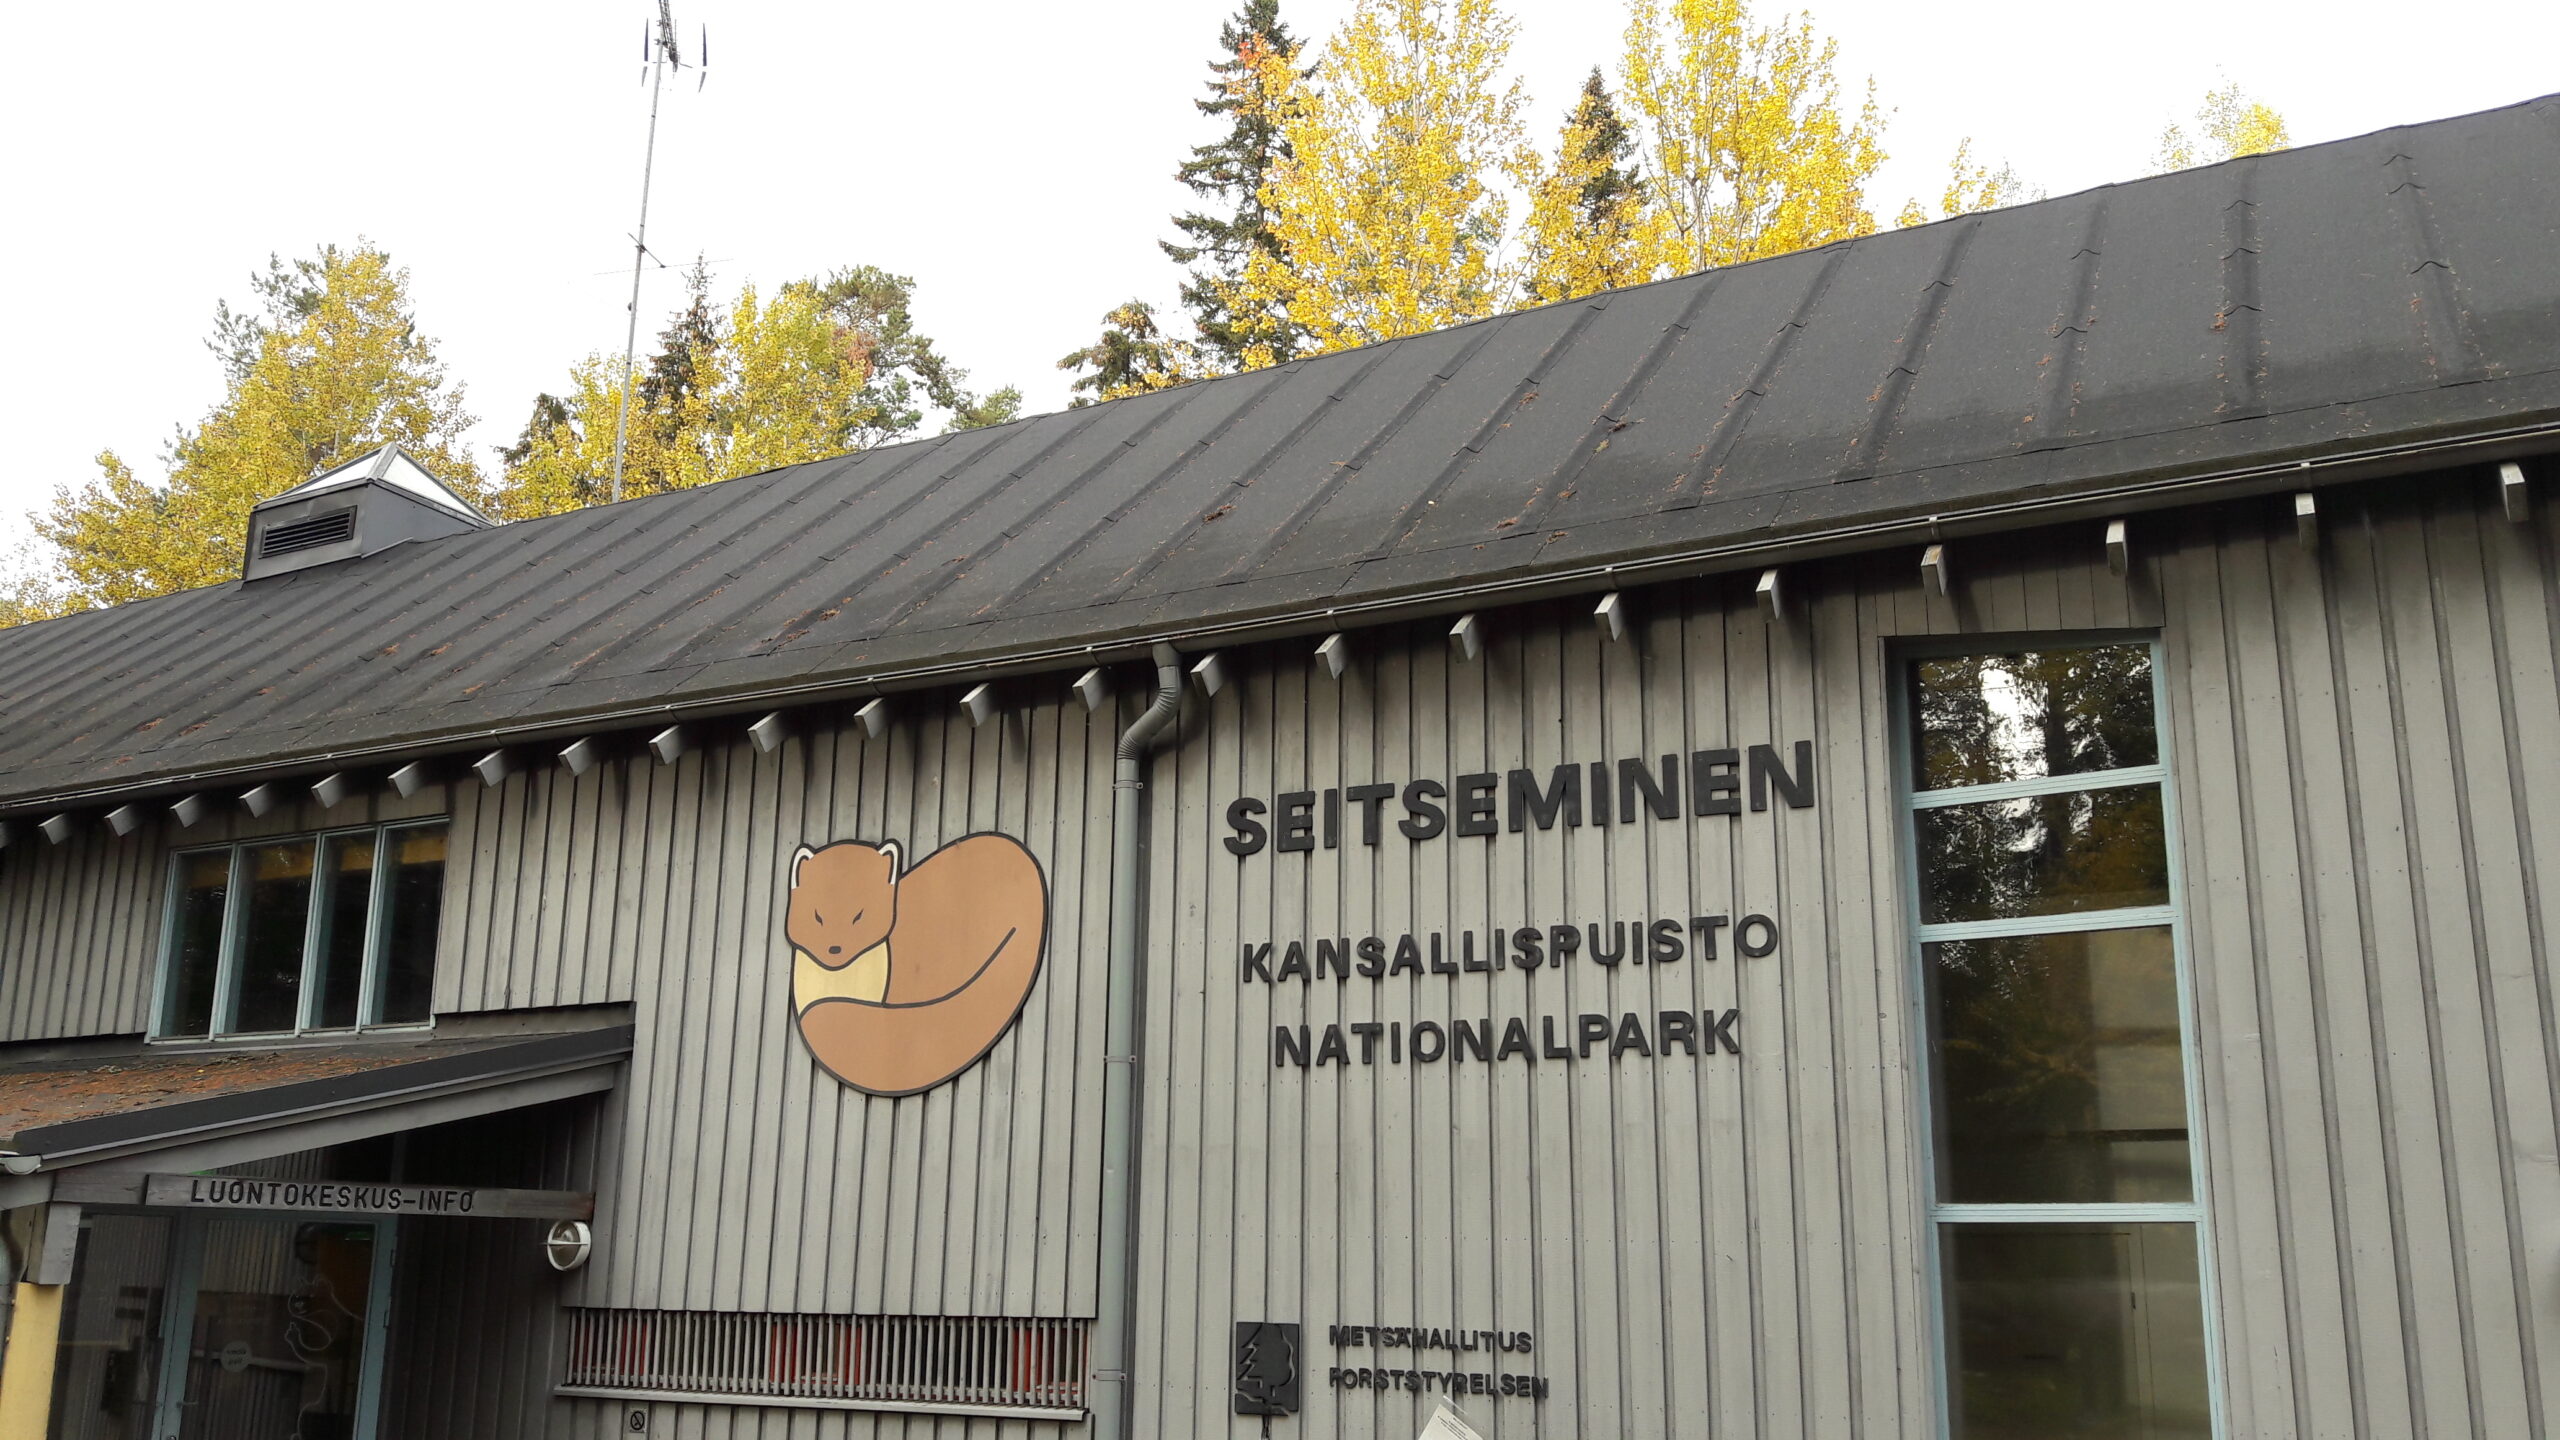 Outdoor Express kuljettaa Tampereelta kansallispuistoihin koko kesän ajan